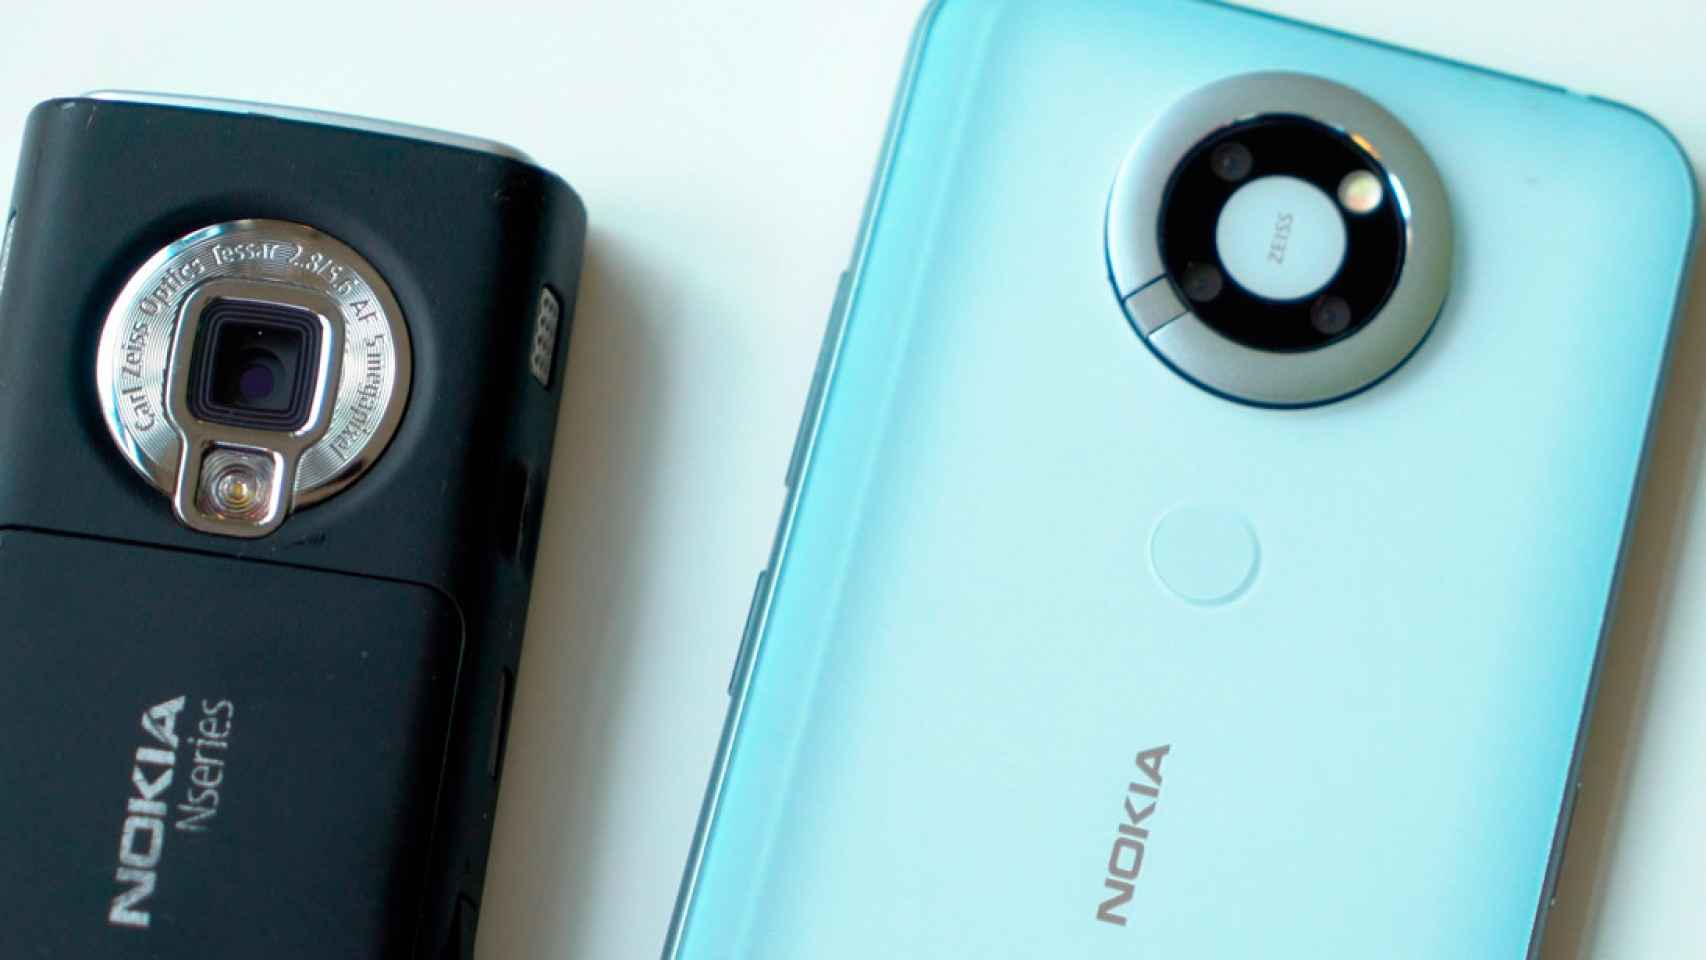 El mitico Nokia N95 estuvo a punto de renacer con Android en su interior